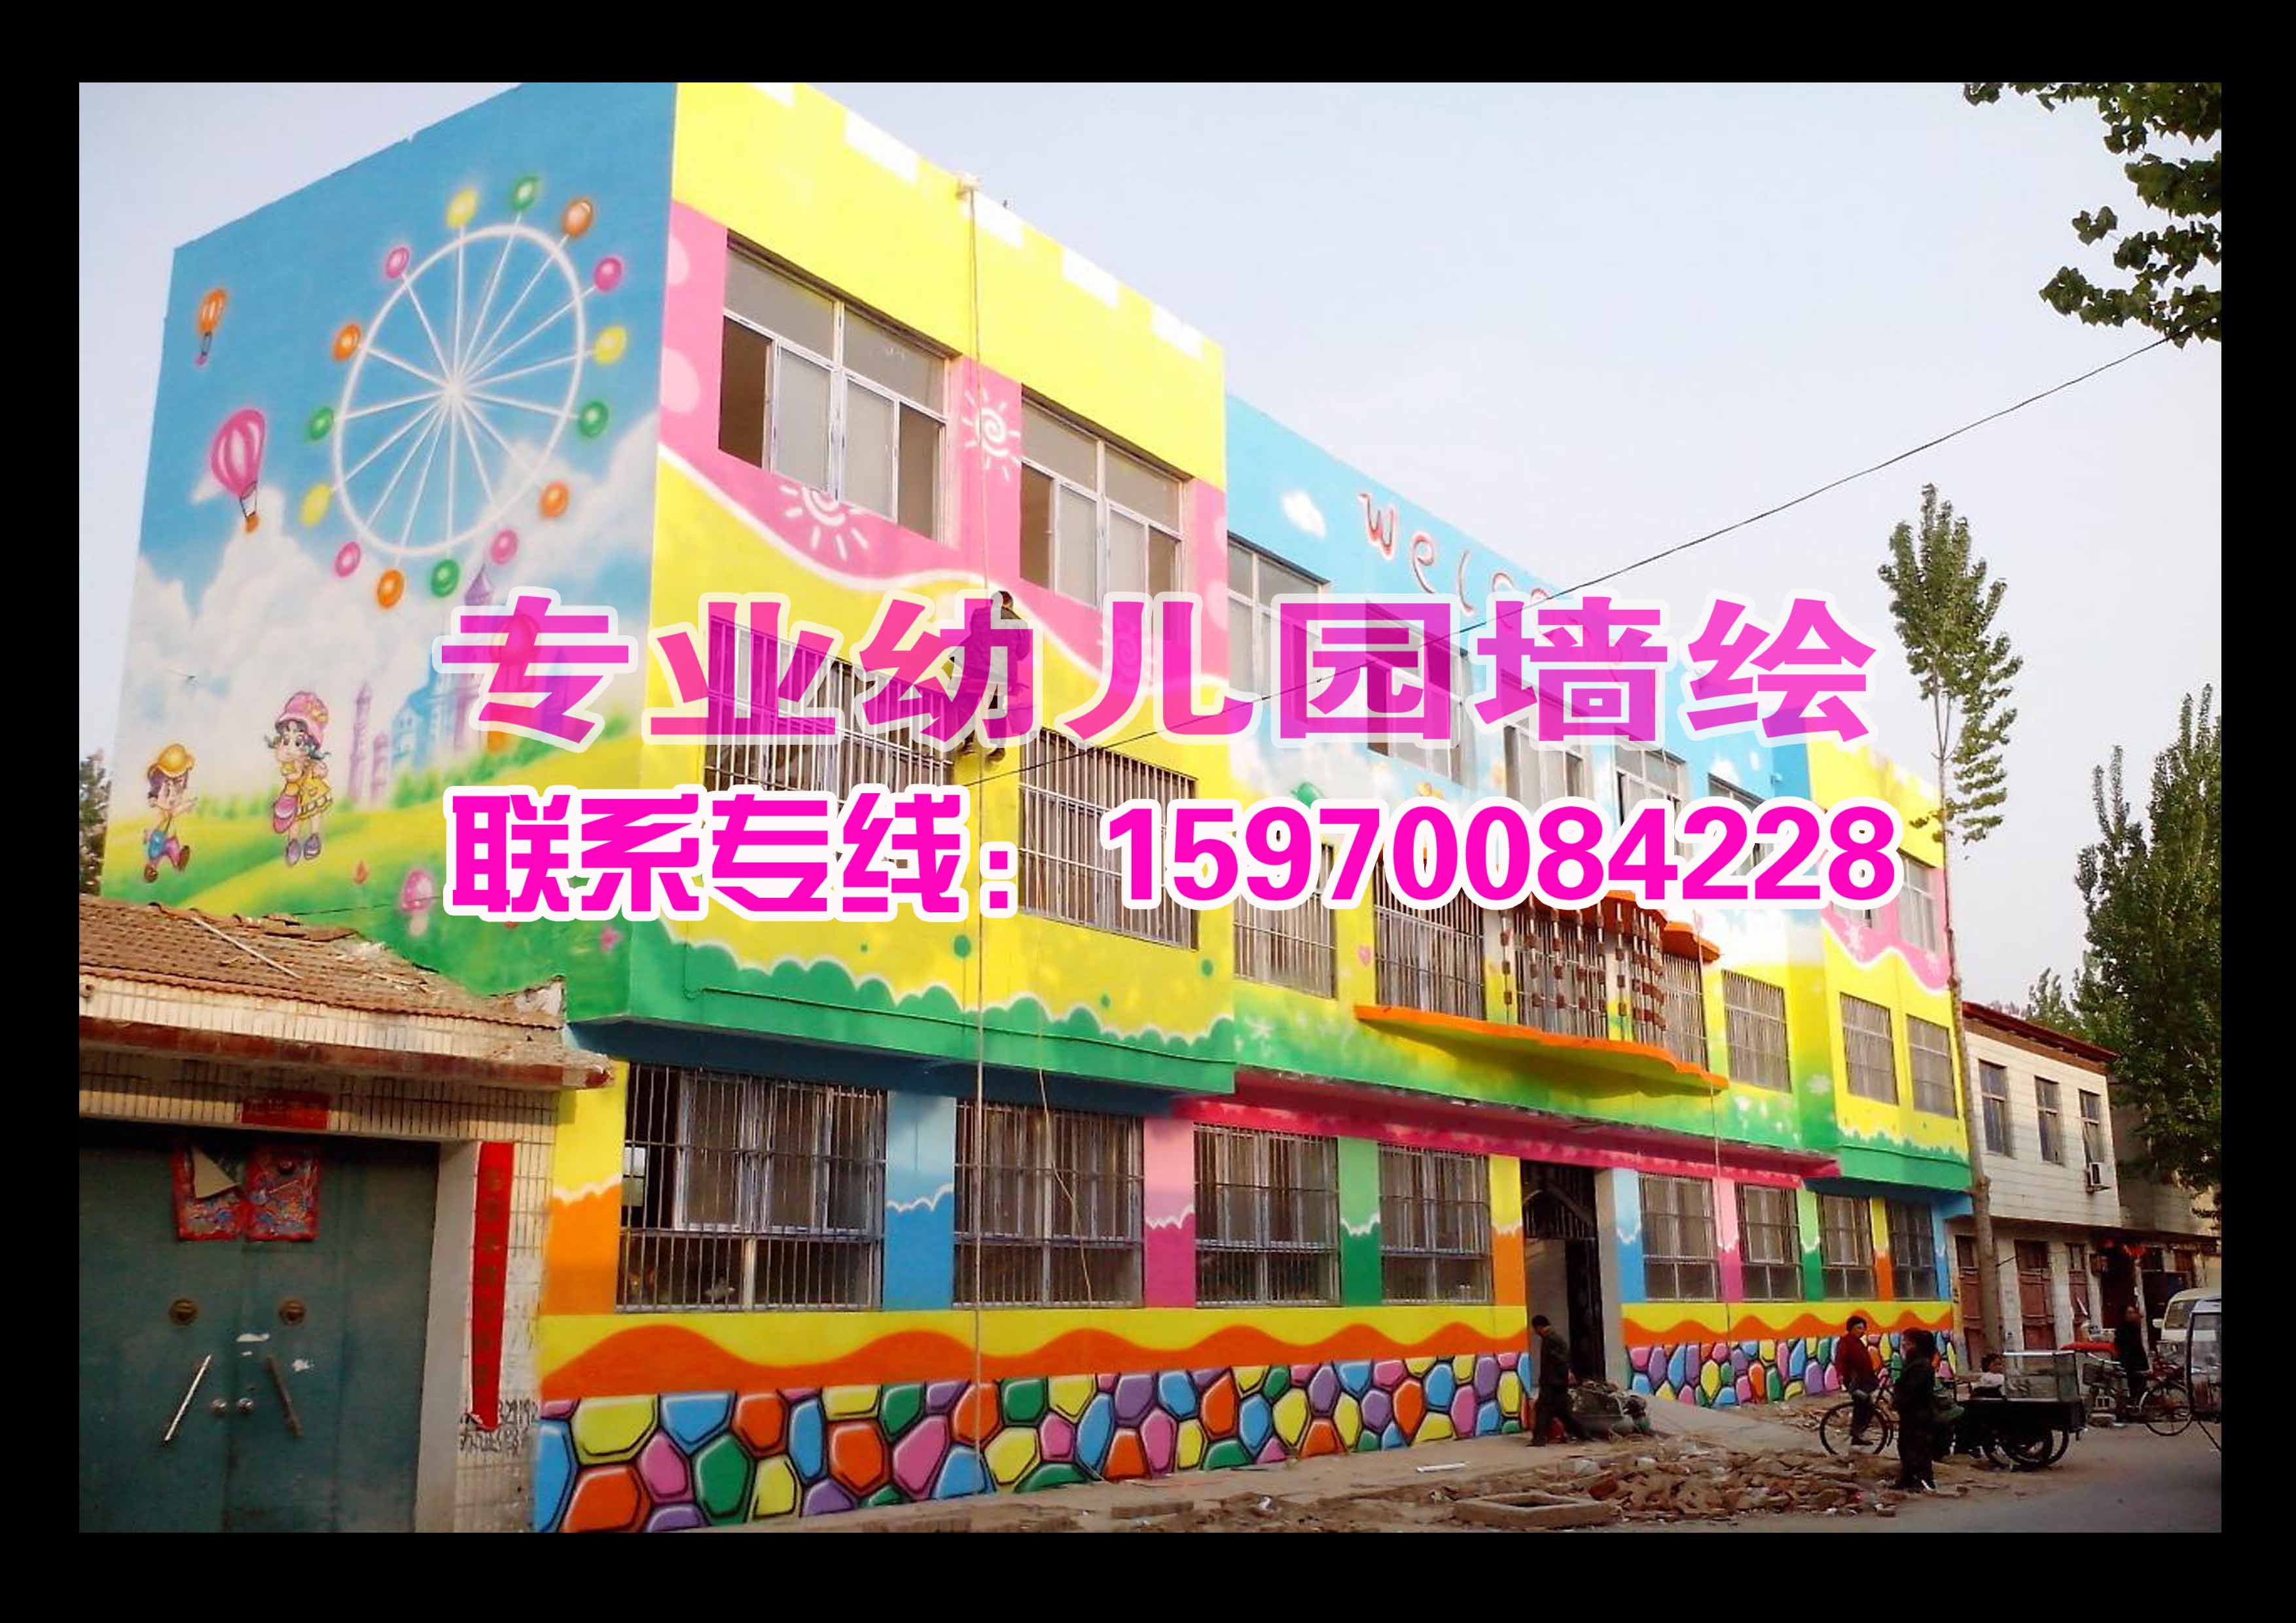 赣州市幼儿园墙绘彩绘外墙喷绘喷画设计施工公司内墙彩绘壁画装饰设计图片